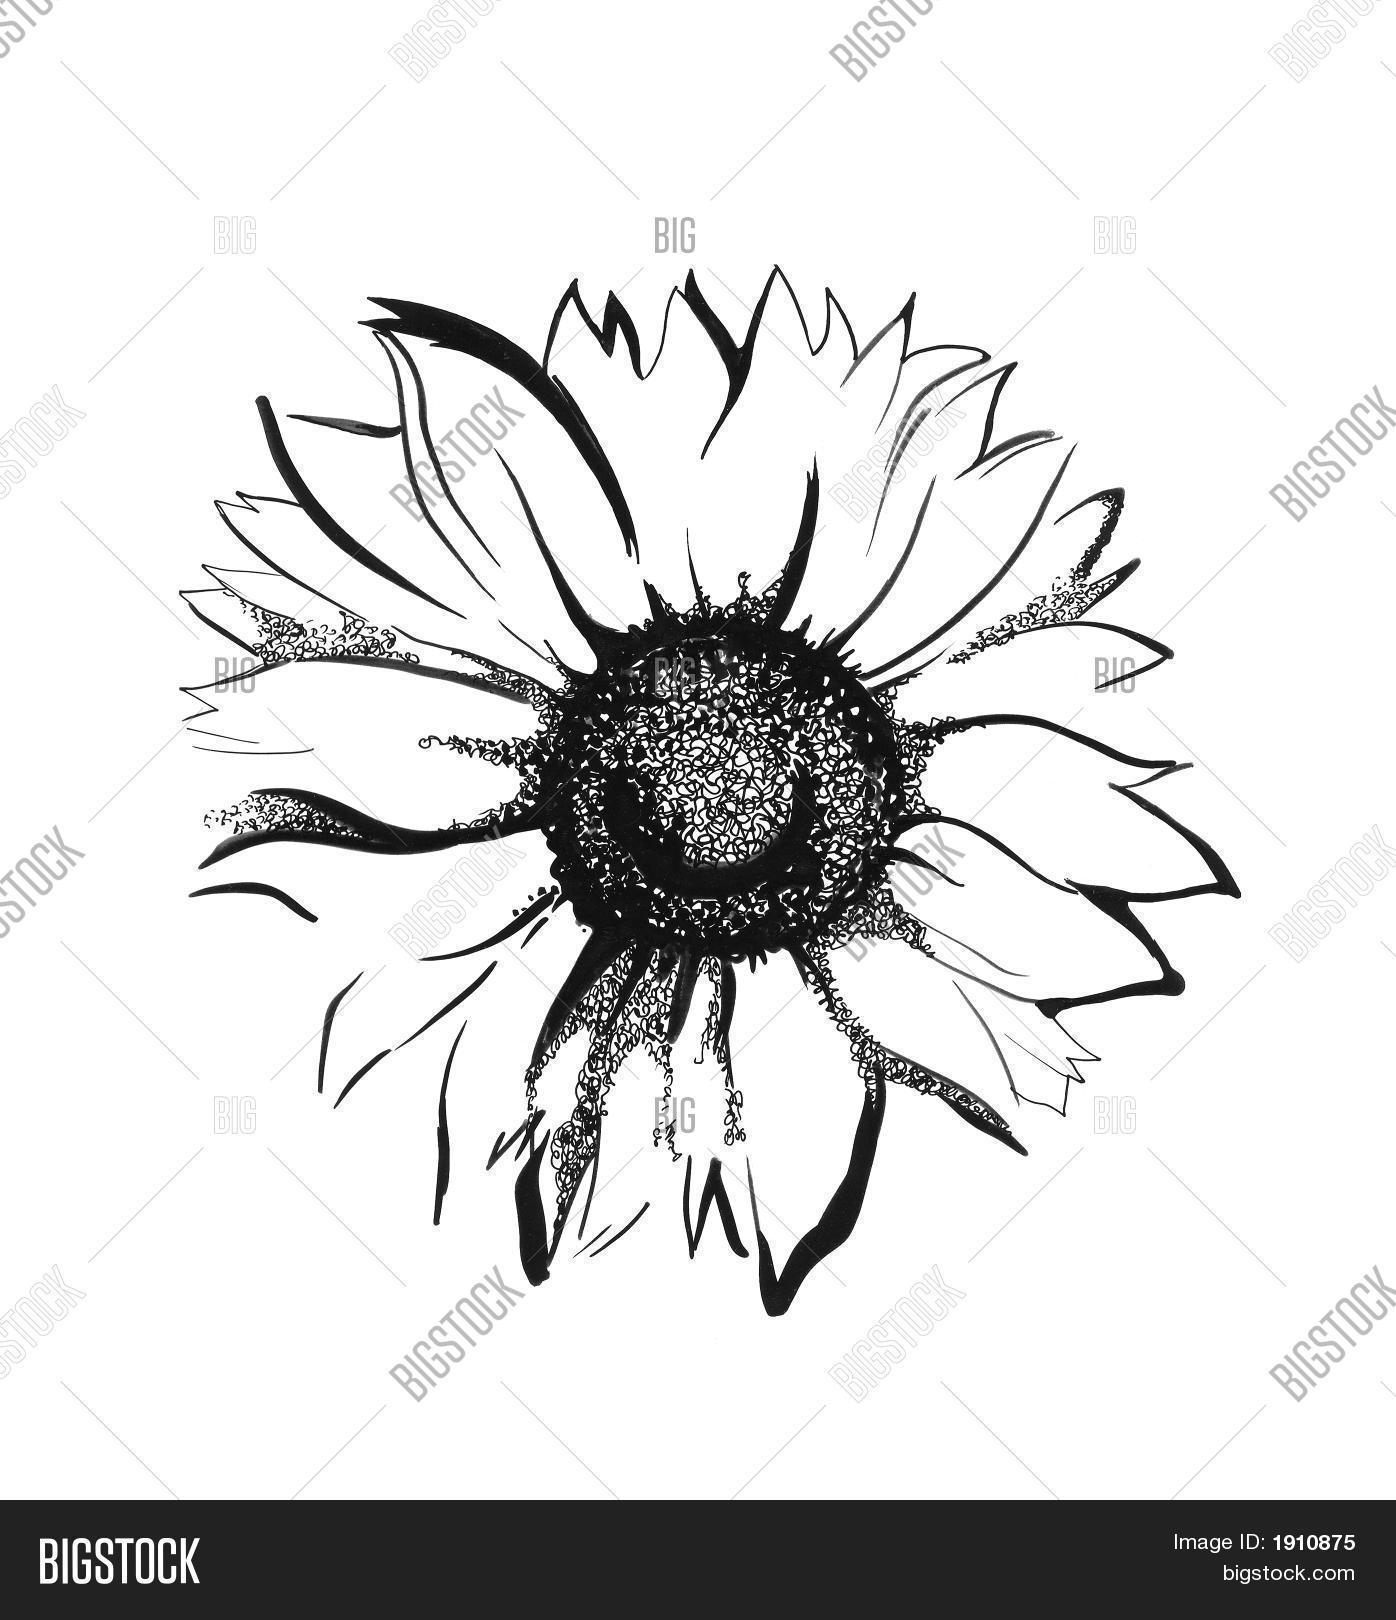 sunflower sketch